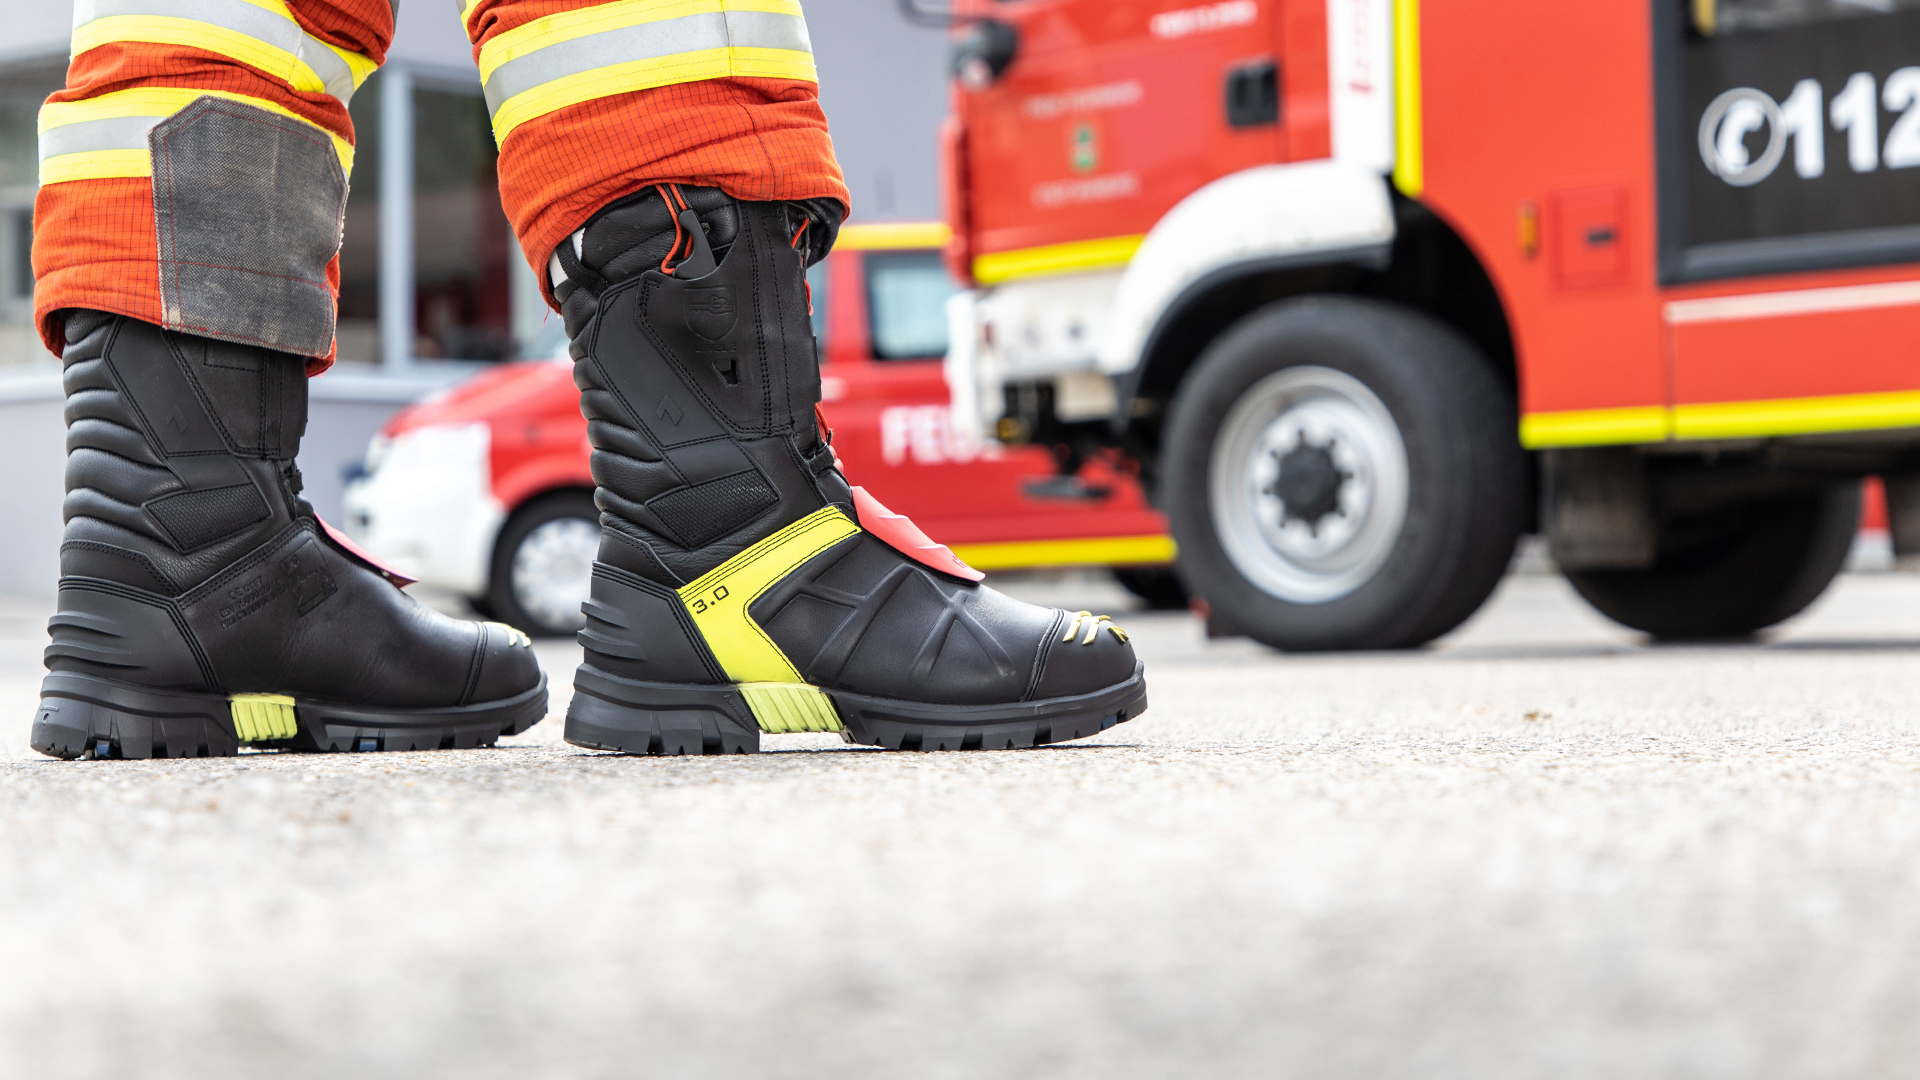 tu fiable Fire Hero 3.0. Haix Fire Hero 3.0 el zapato de bomberos más seguro del mundo 